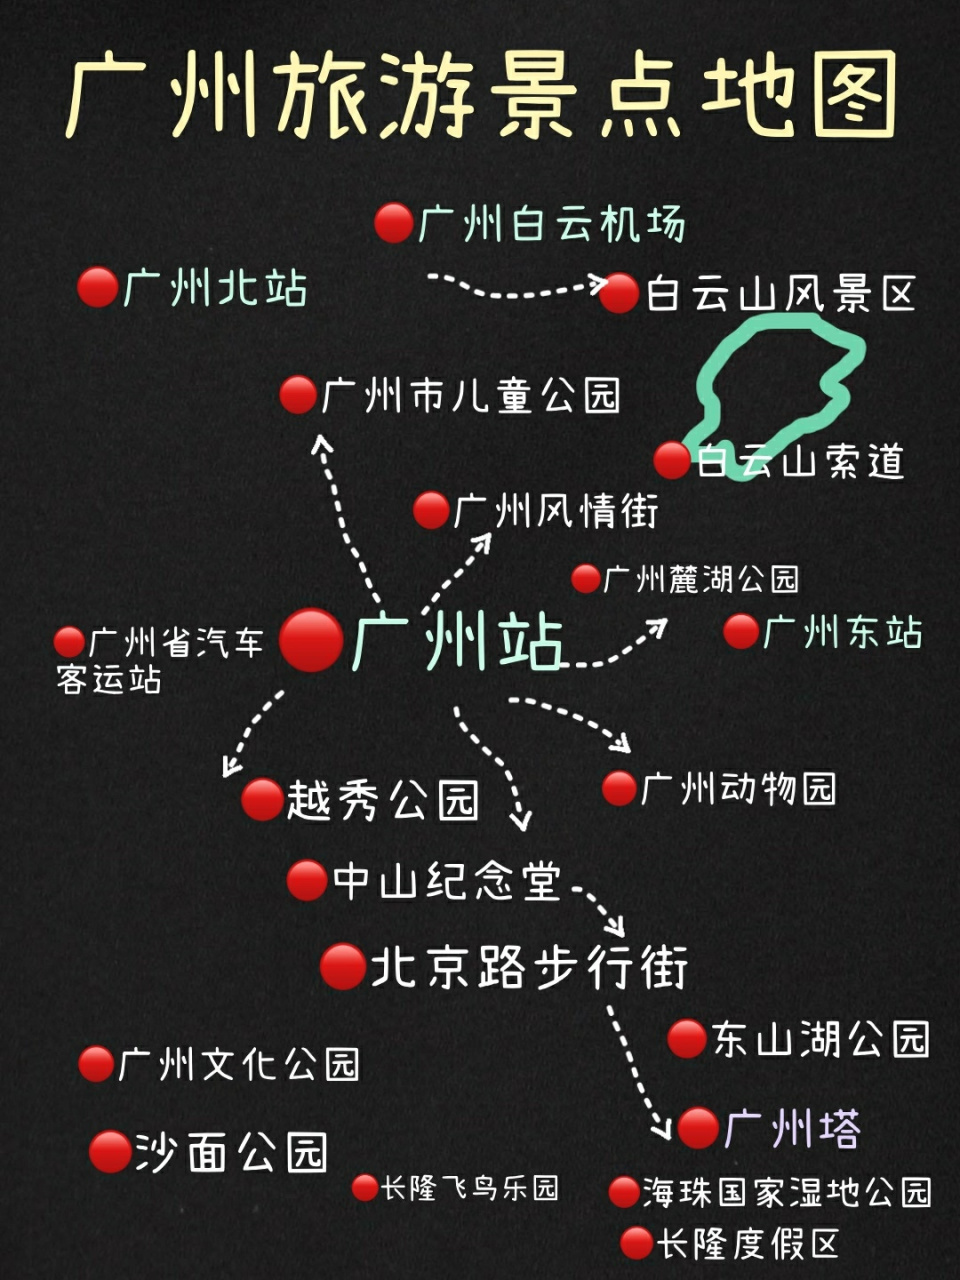 广州旅游攻略景点地图地铁线路附长隆乐园 咚98咚98咚98广州